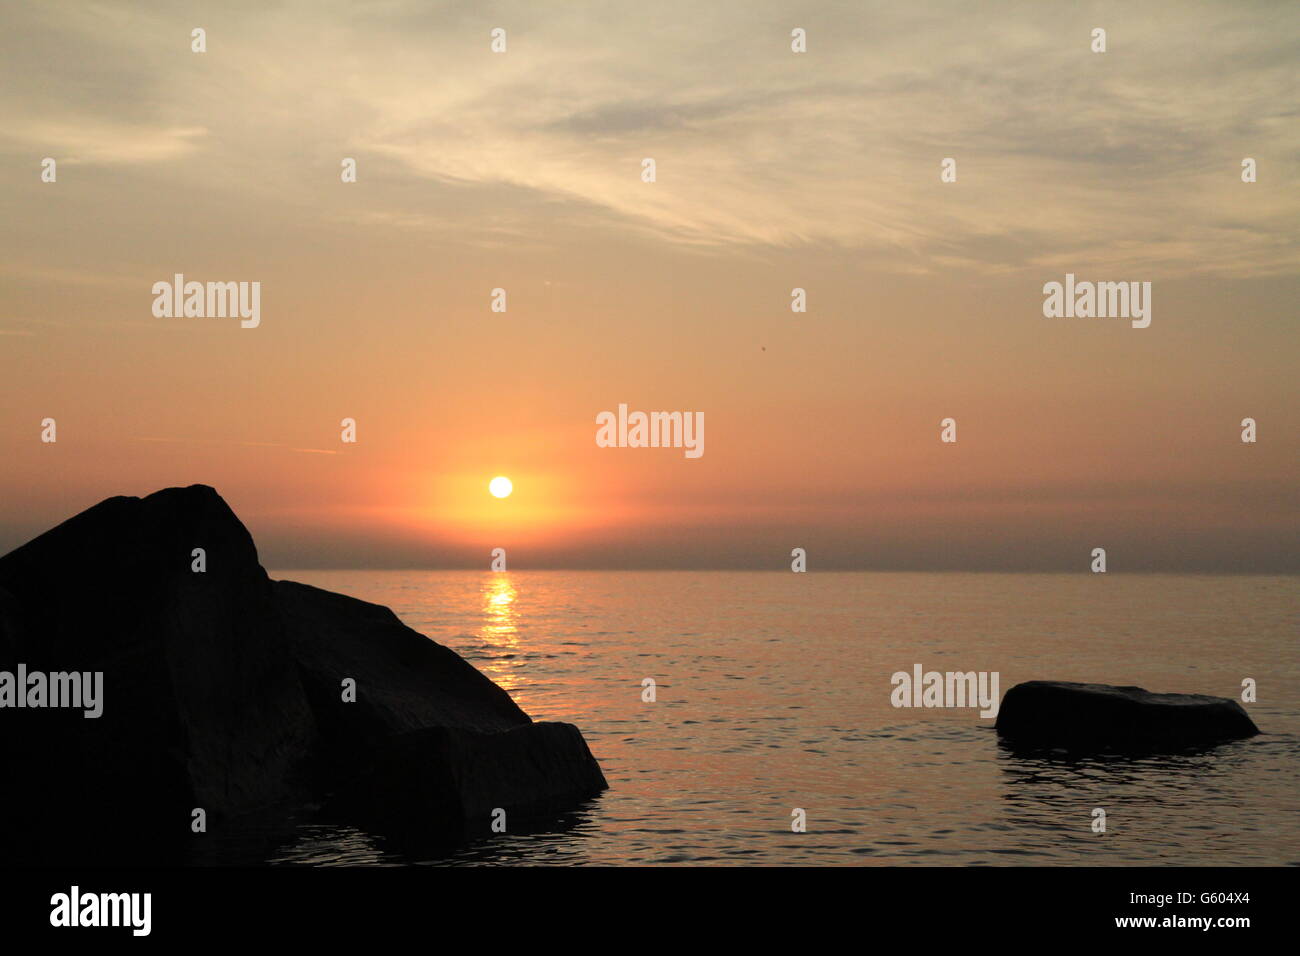 Sunrise at lake front Stock Photo